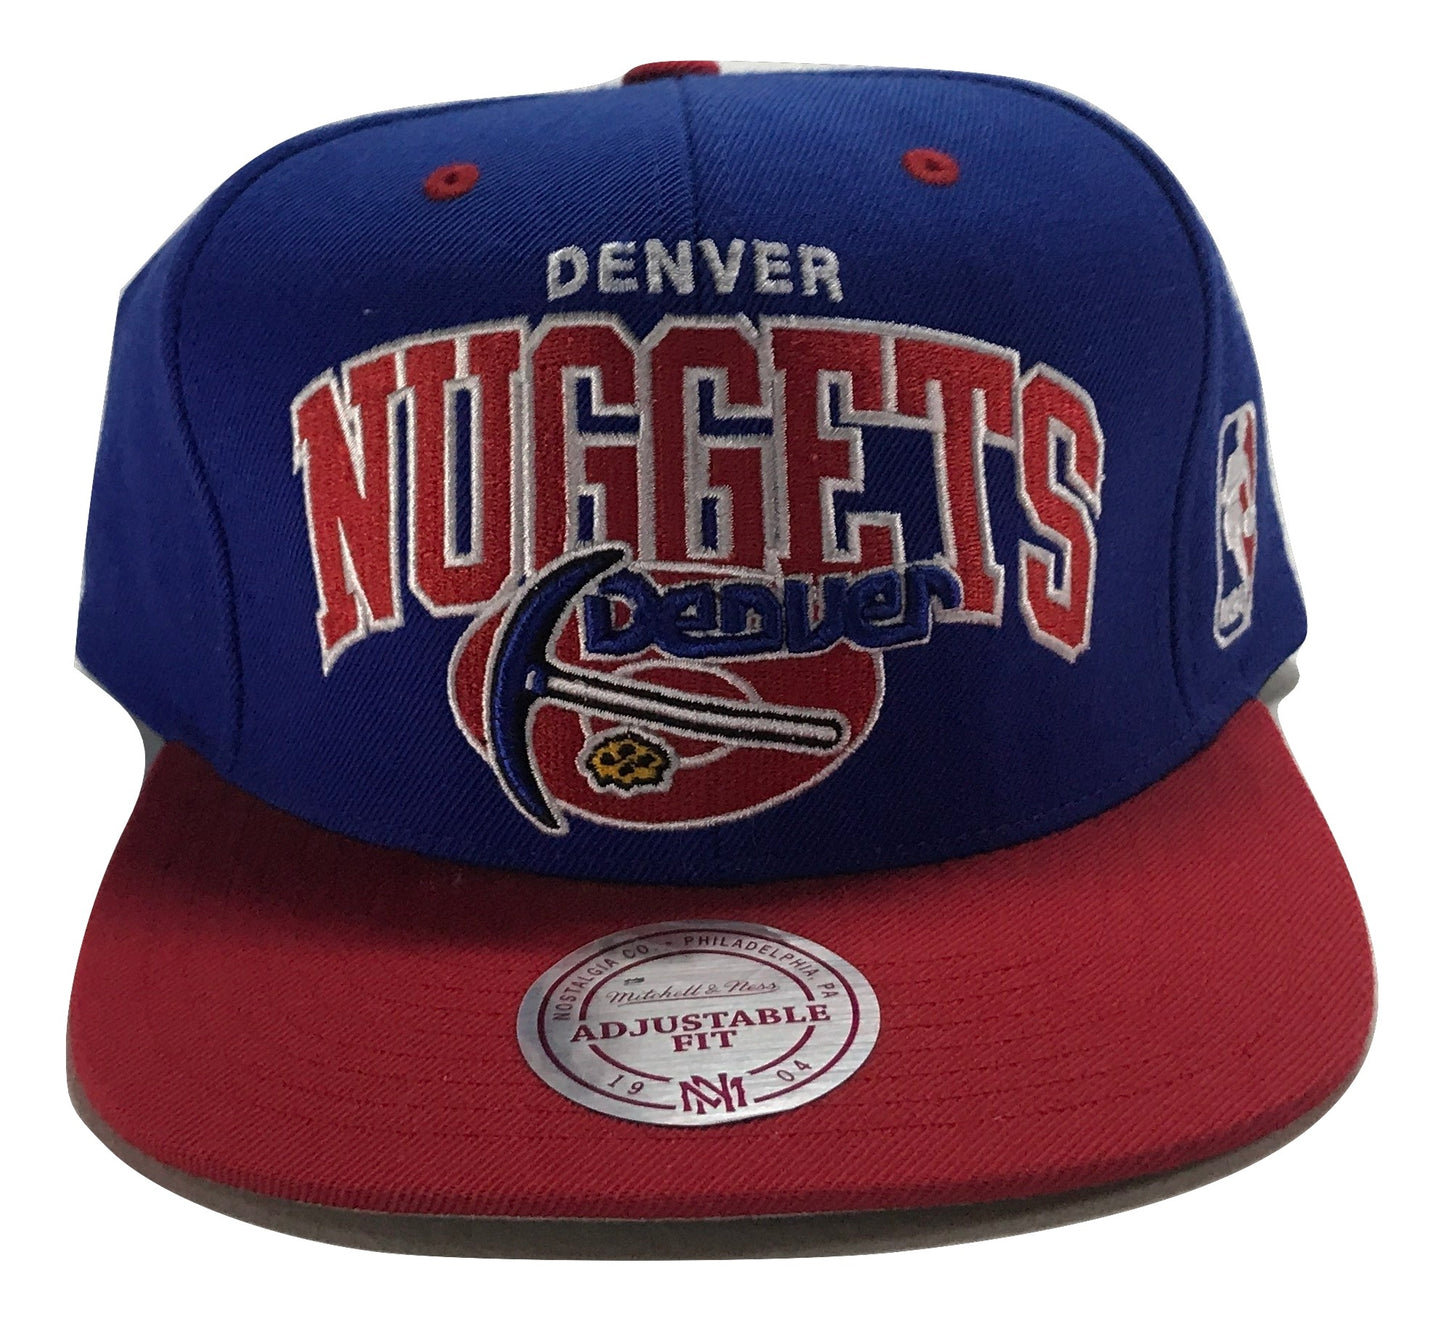 Denver Nuggets (Blue) Snapback